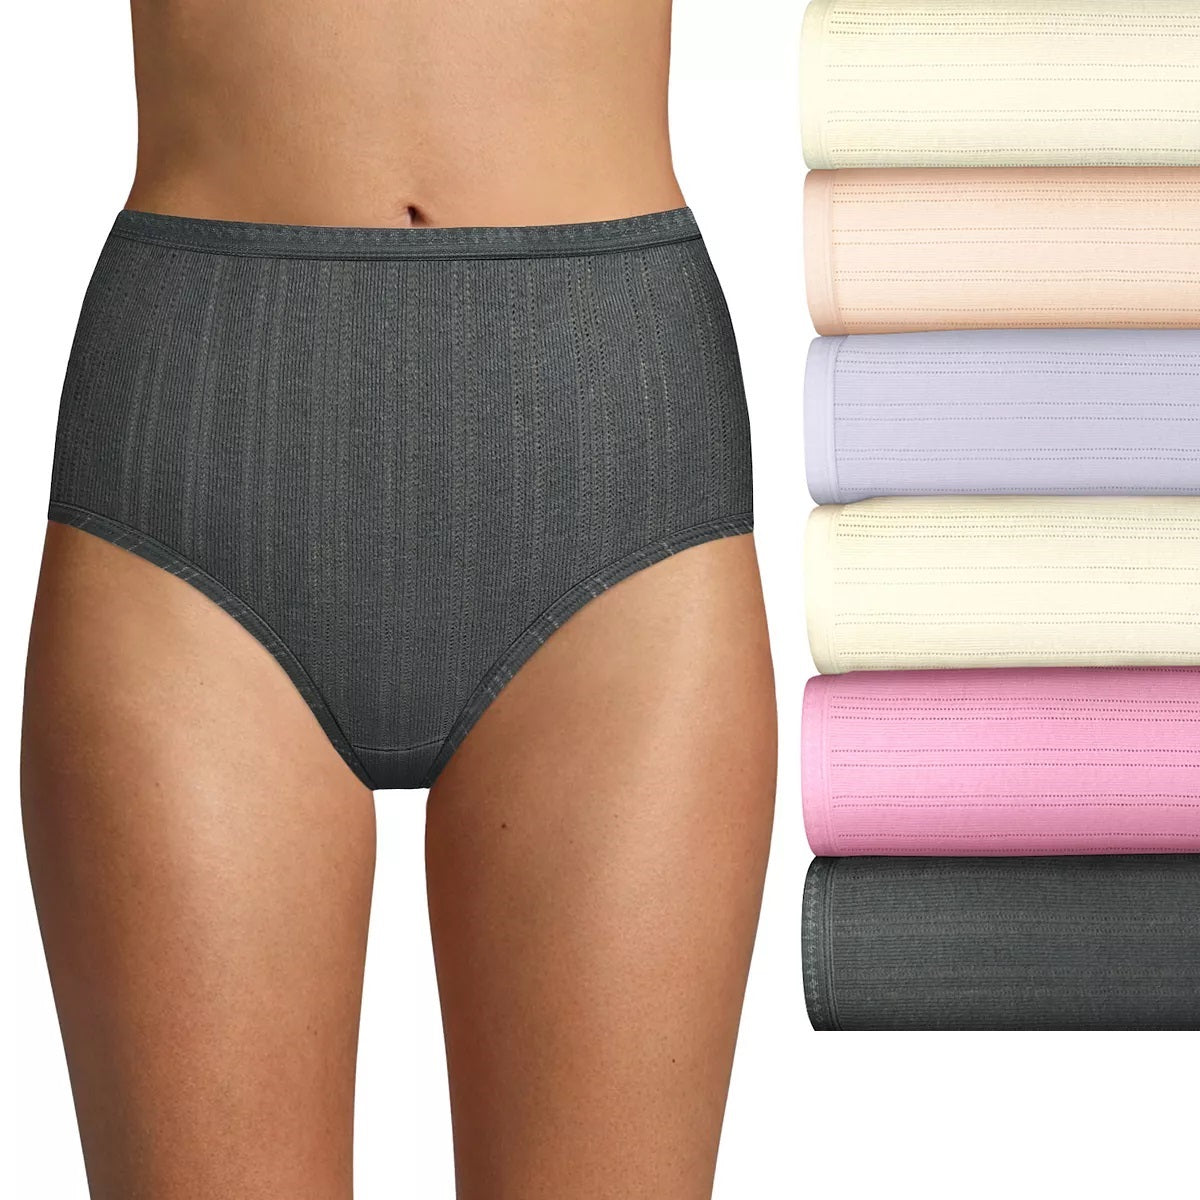 Hanes Women's Signature Cotton Brief Underwear, 6-Pack 